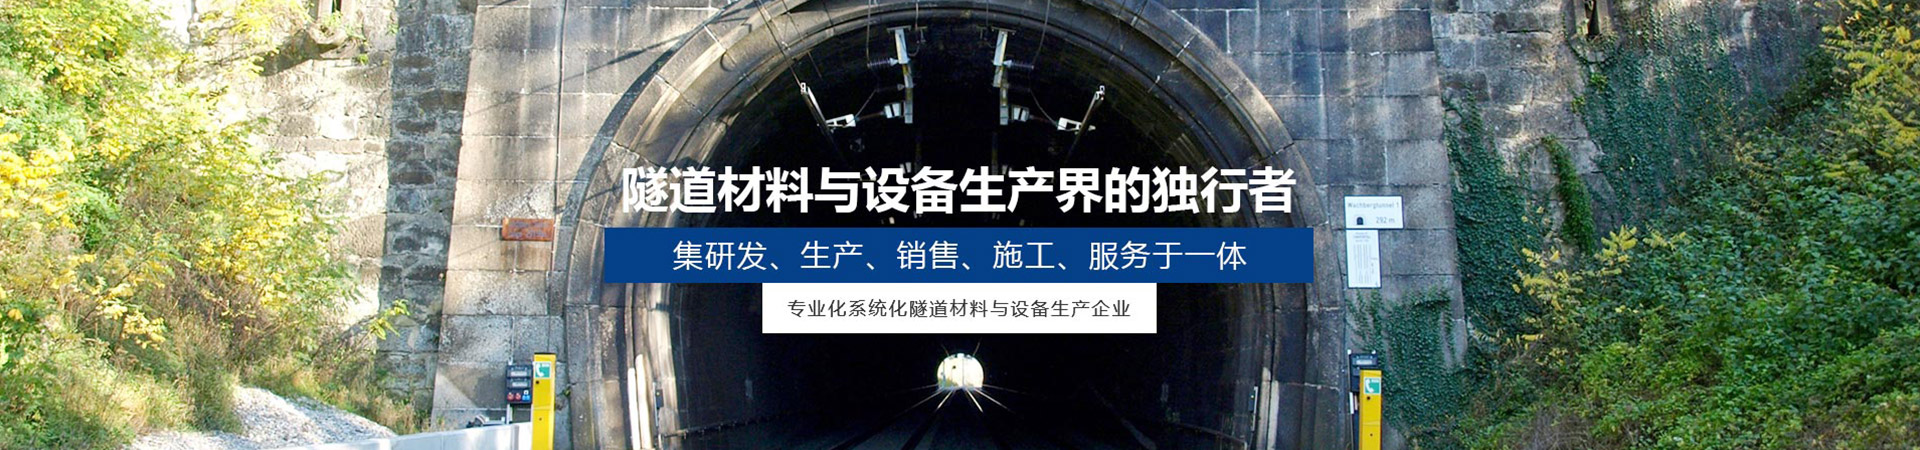 广汉止水带模板服务_隧道建筑项目合作公司-四川皓德斯新材料科技有限公司官网